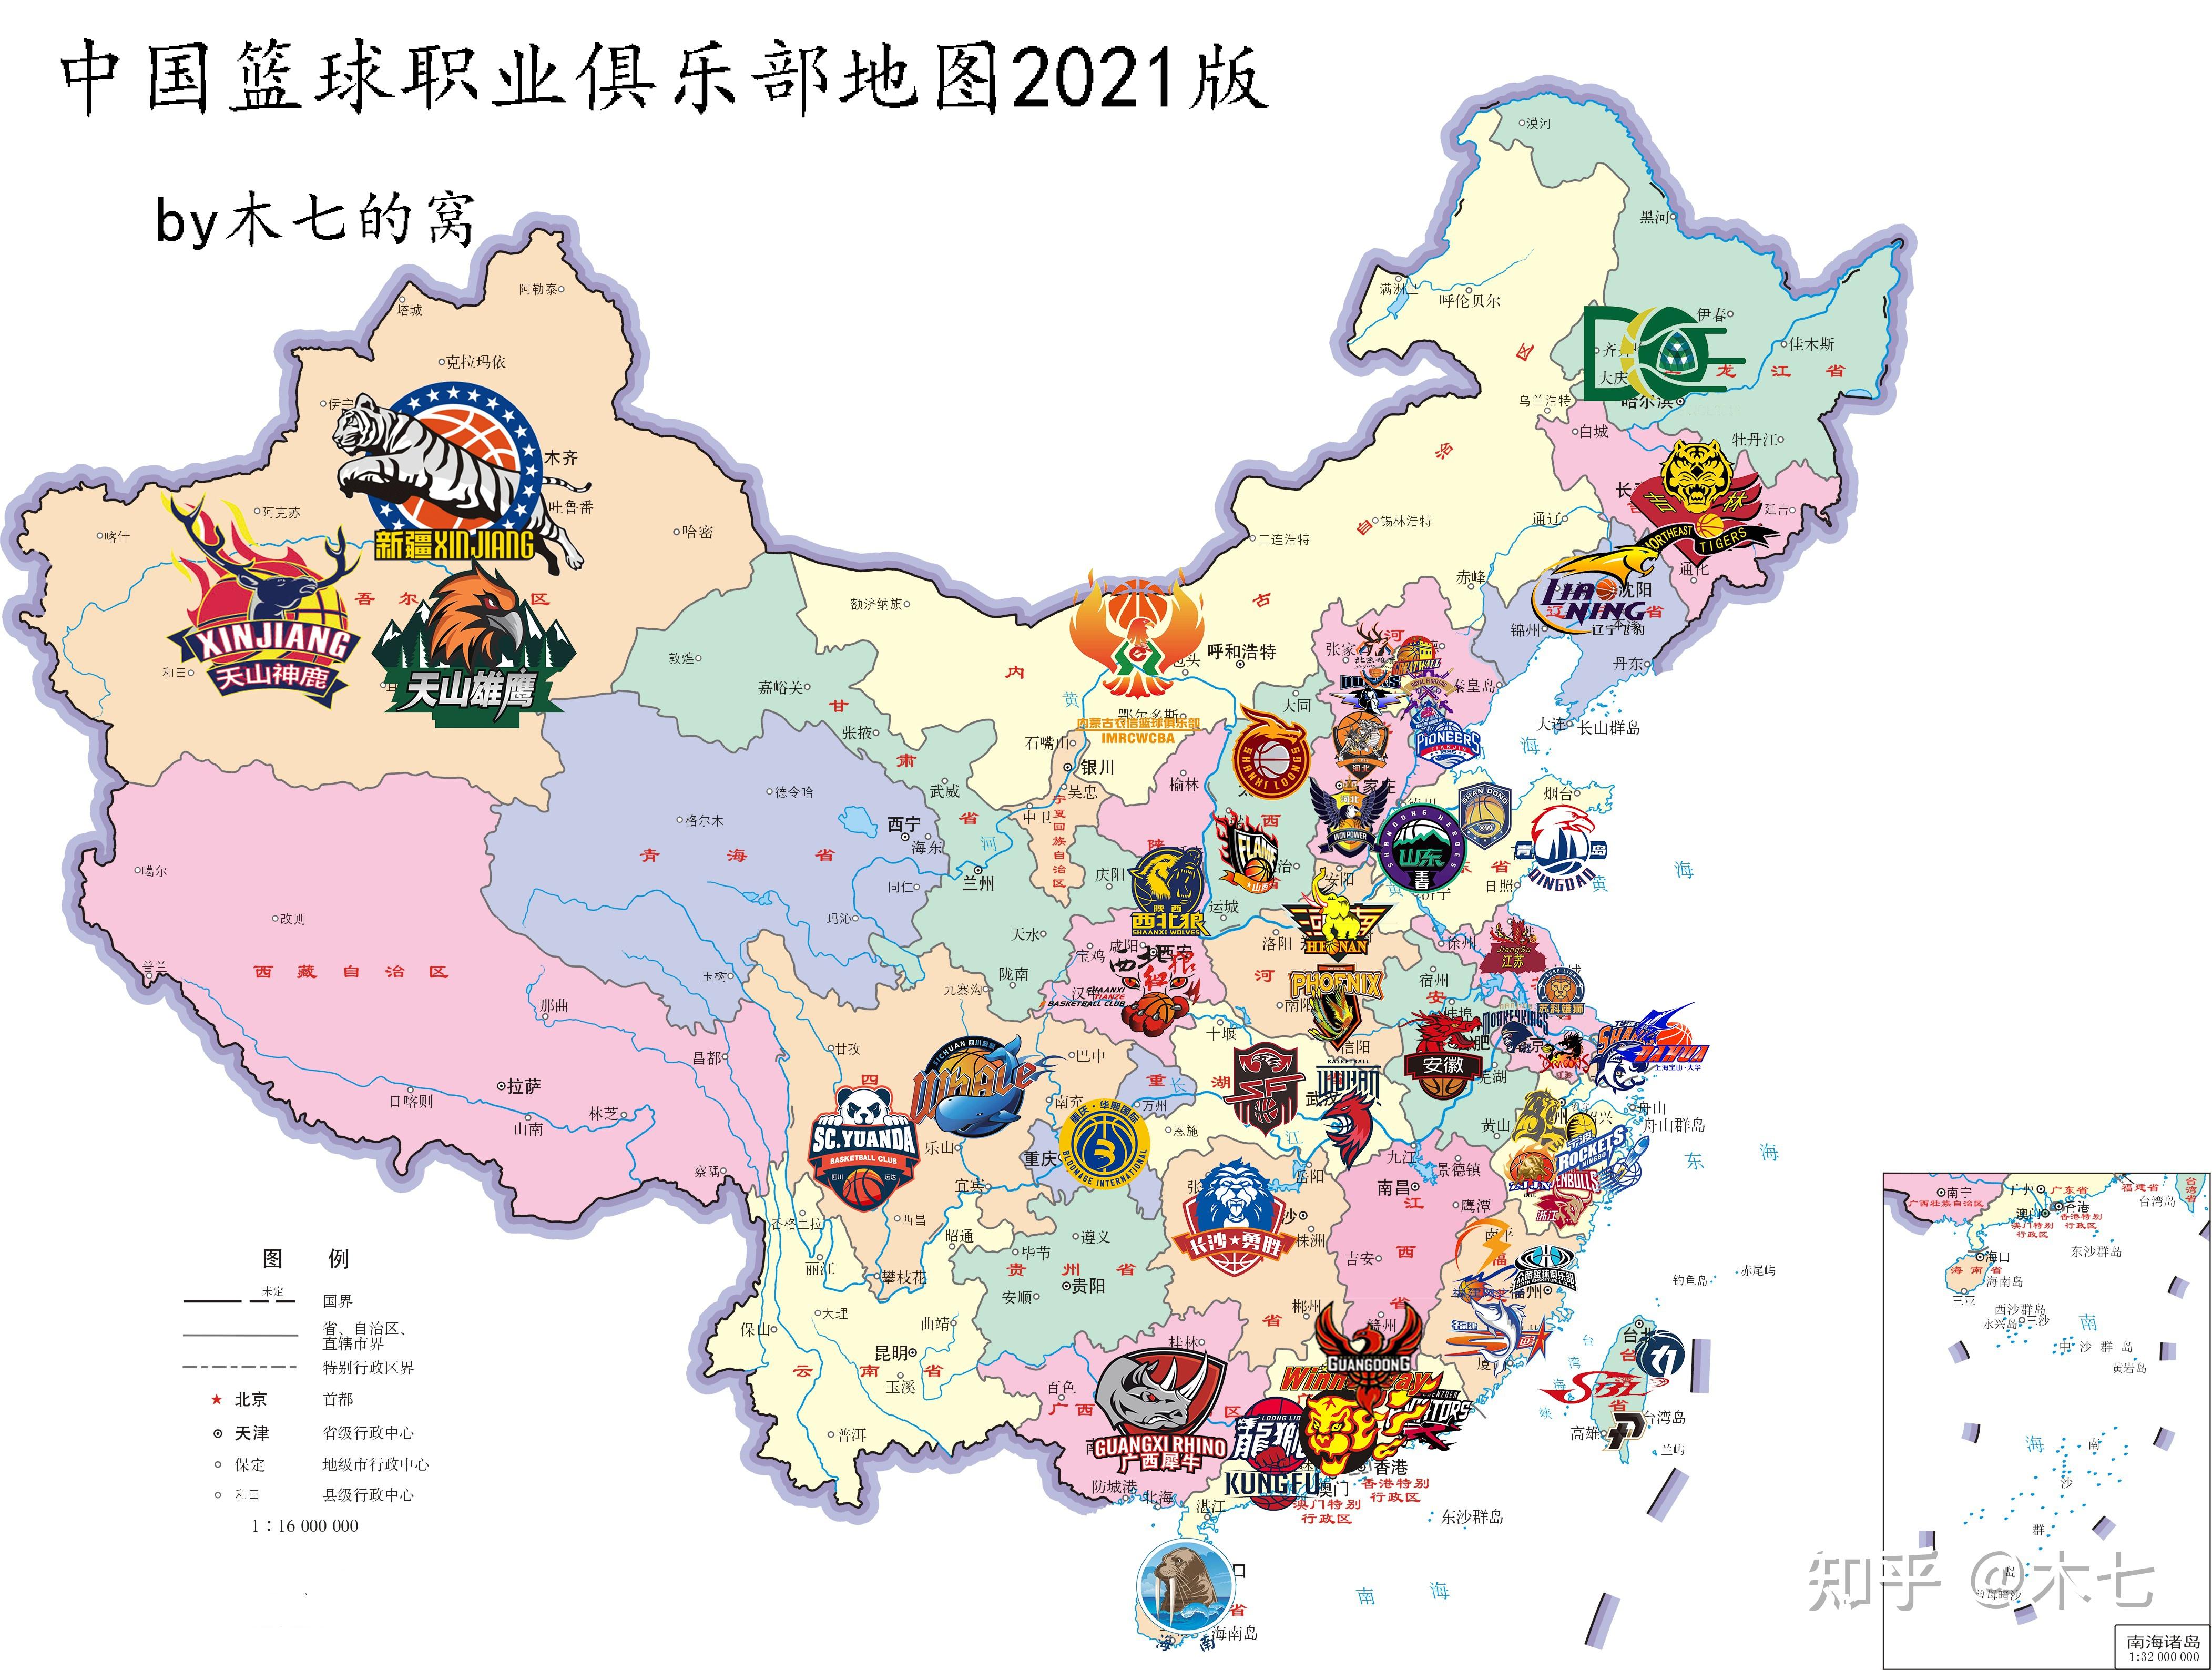 决赛圈的8支球队是广东,辽宁,浙江,山东,北京,湖北,天津,陕西,中国